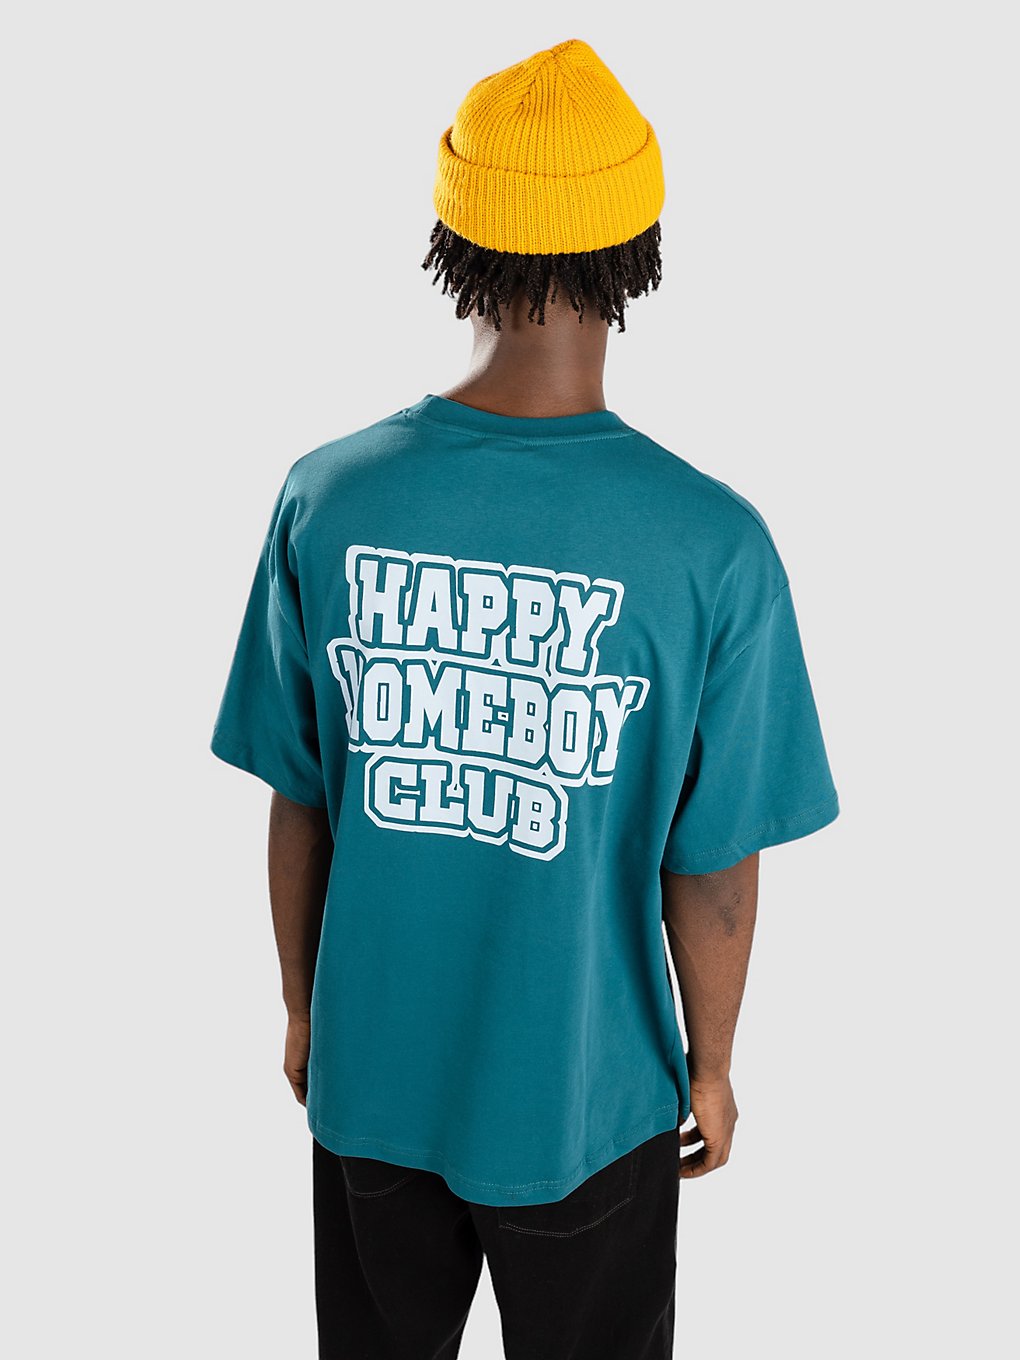 Homeboy Happy Club T-Shirt teal kaufen